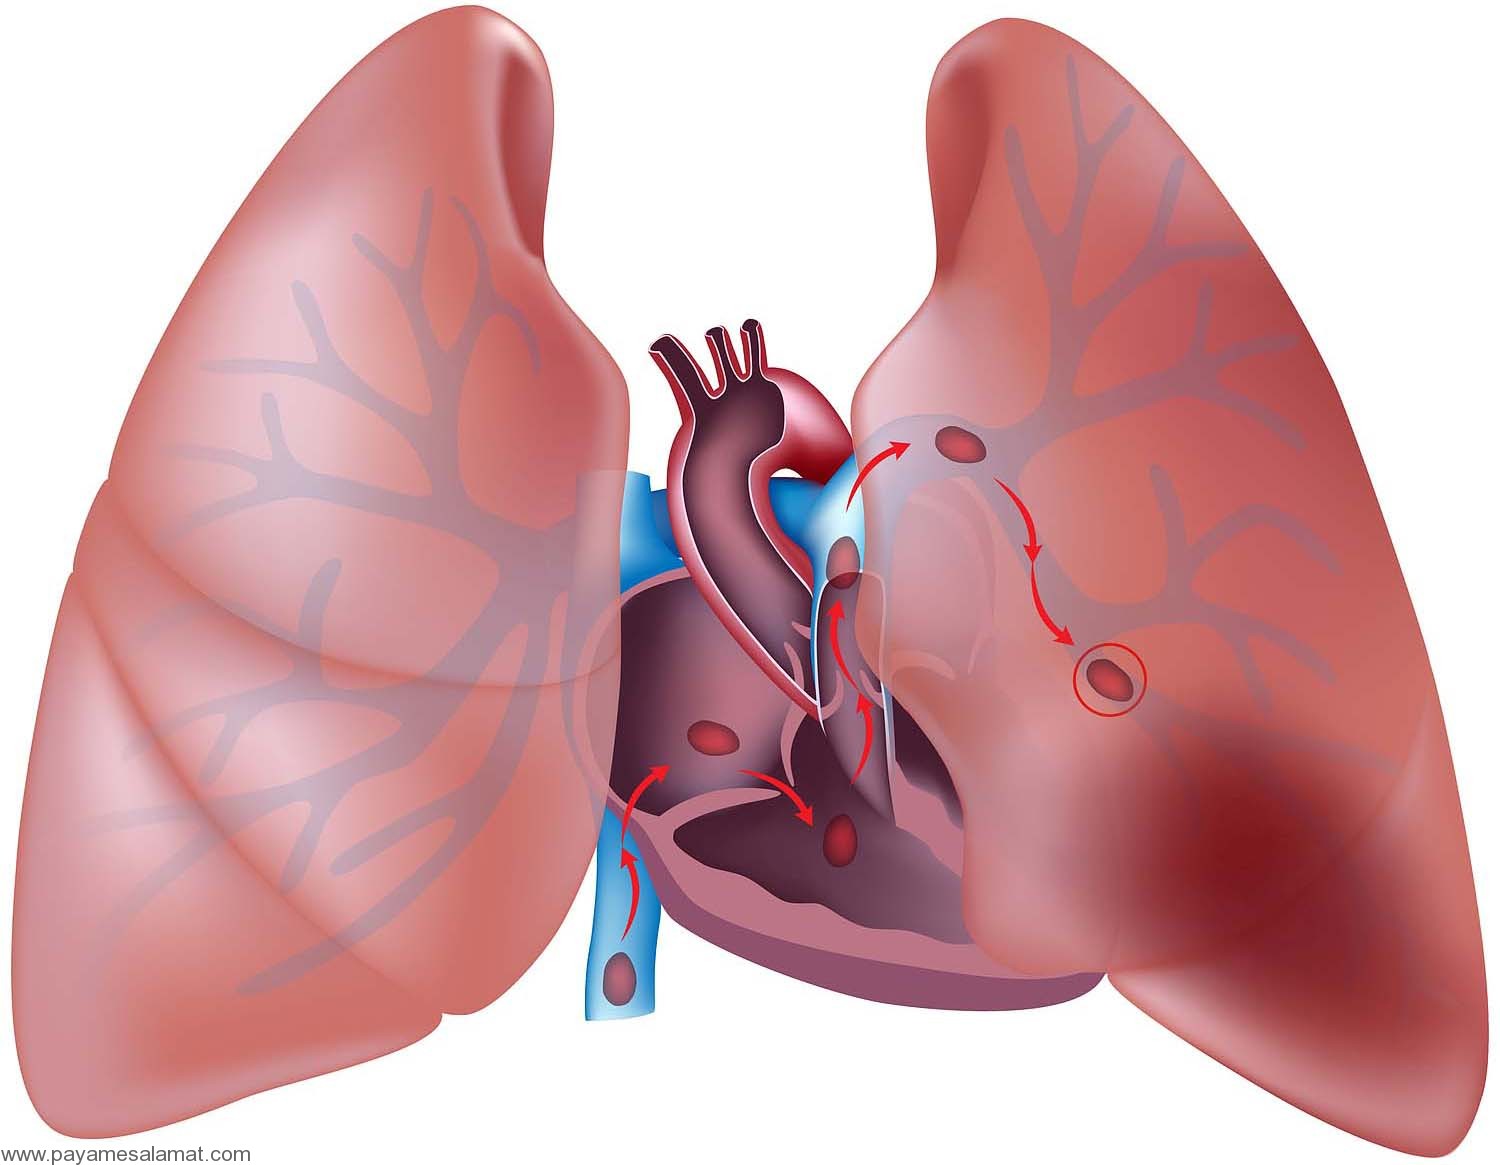 آمبولی ریه را بهتر بشناسید